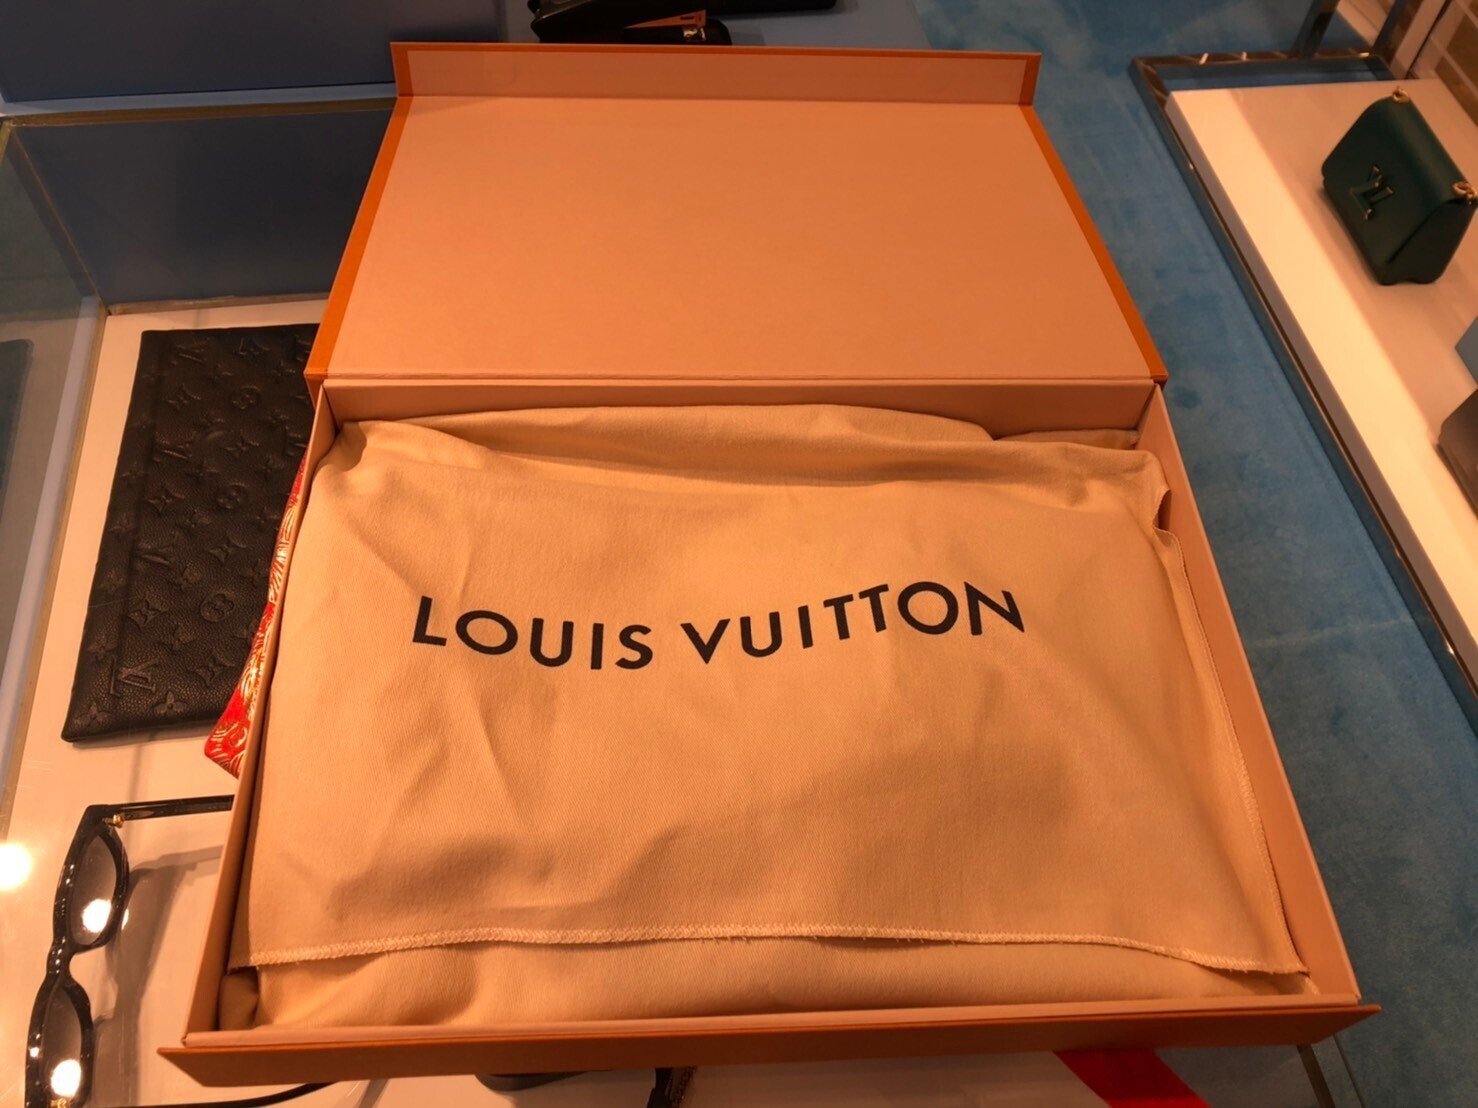 在庫復活からの奇妙な冒険の道を歩んだLouis Vuitton バックパックの 